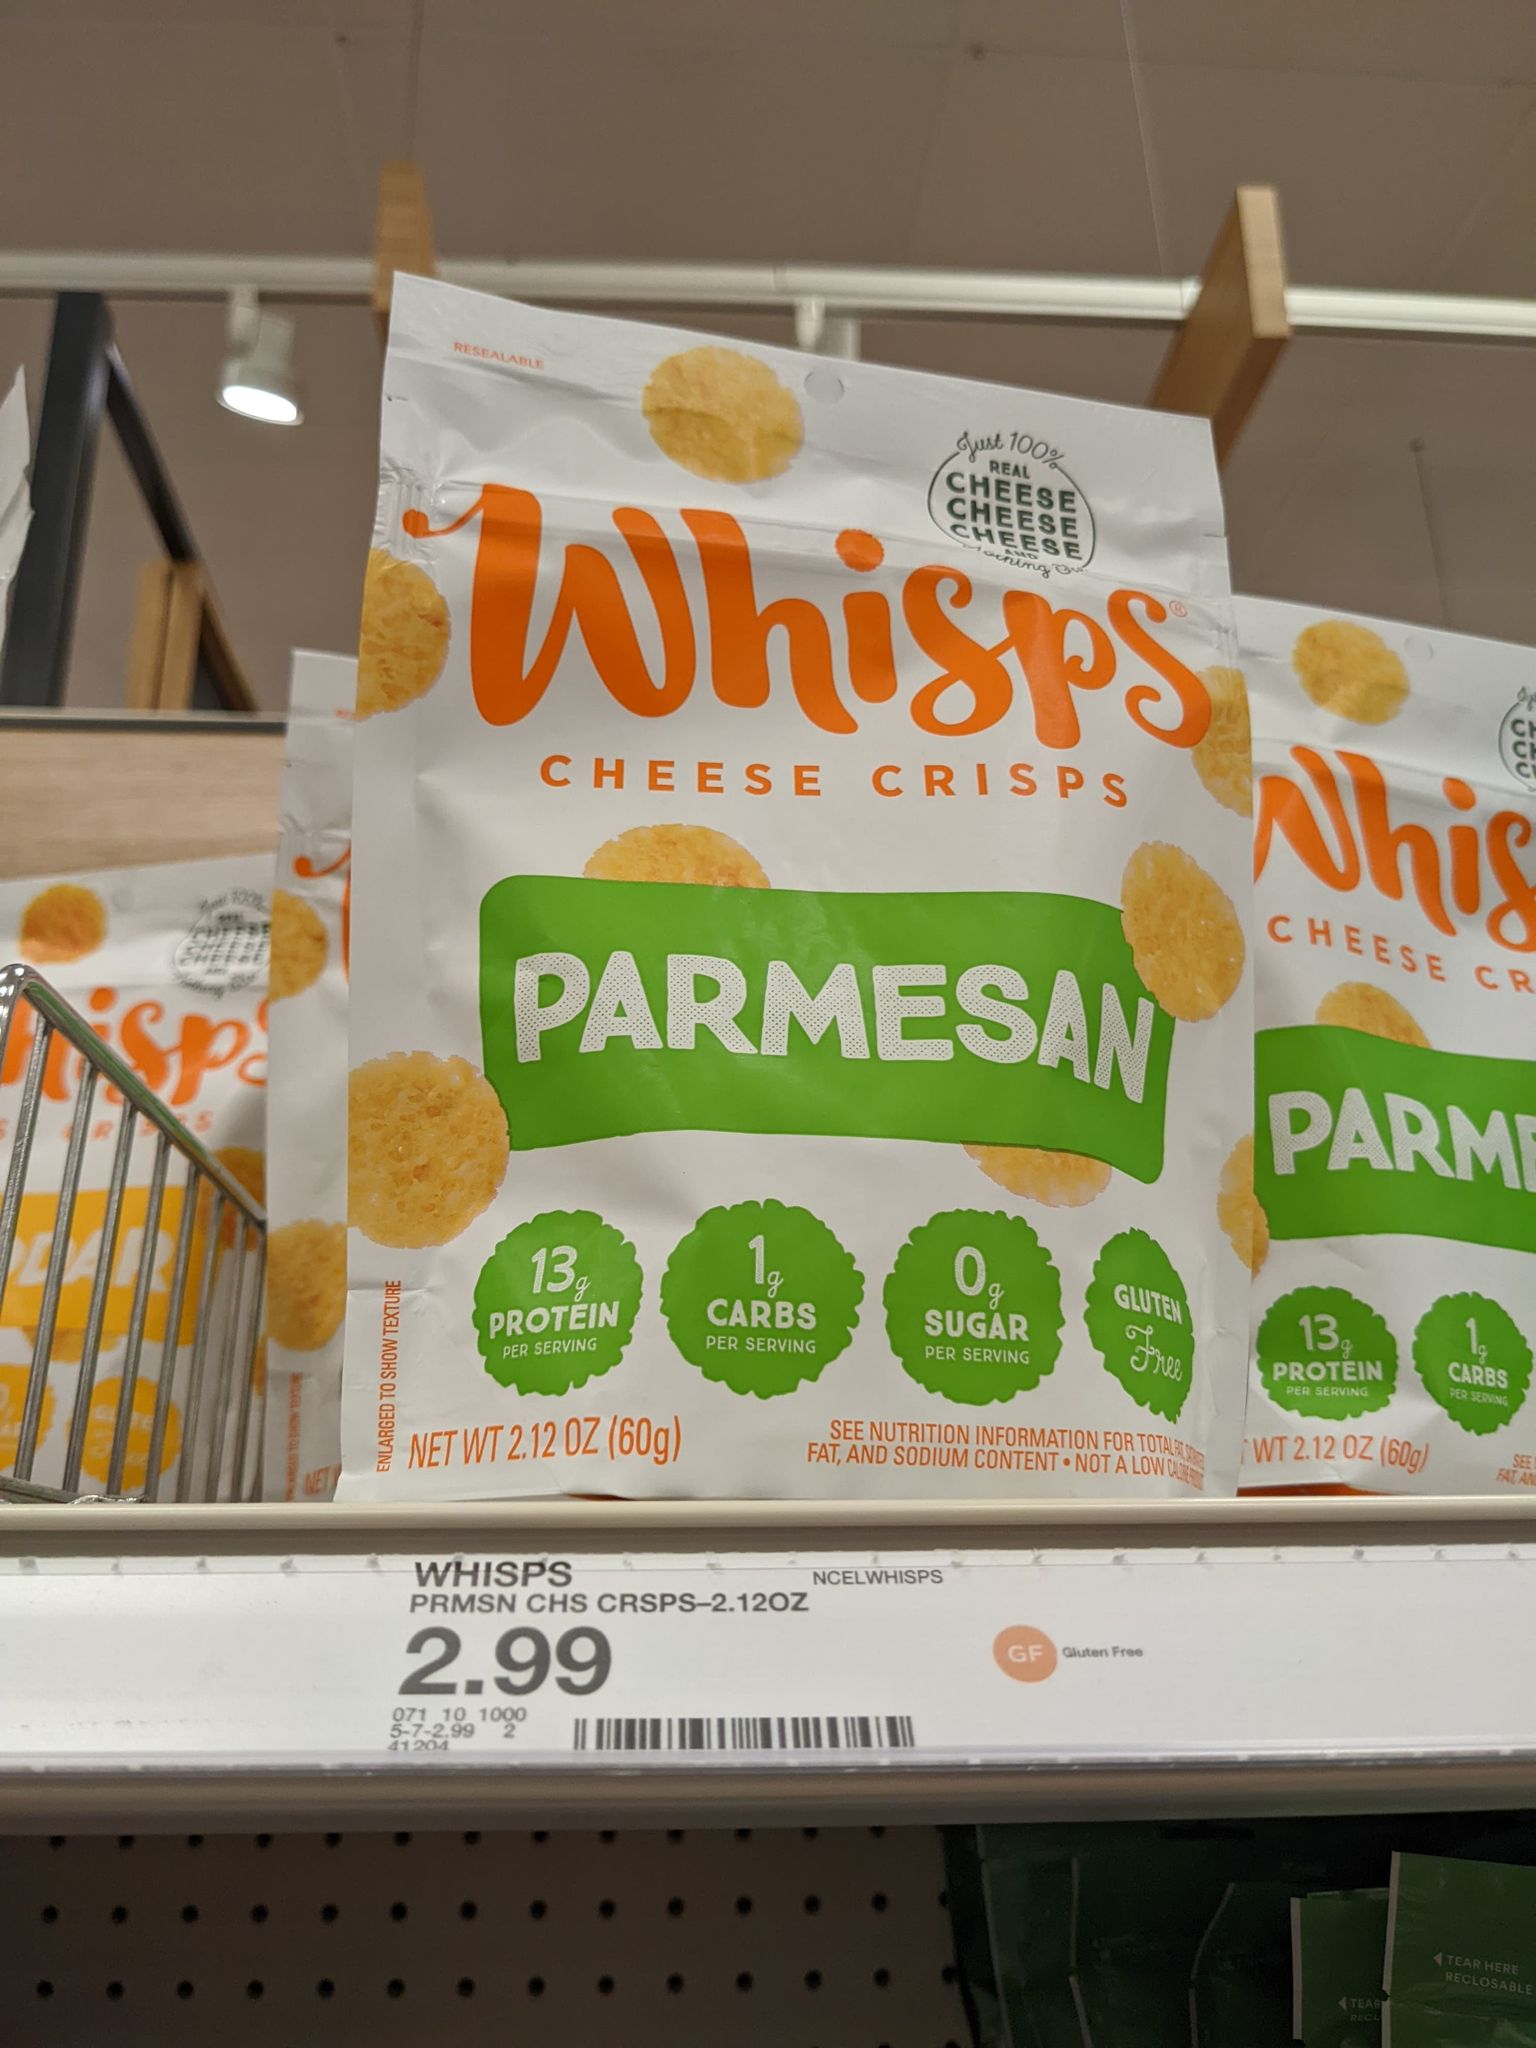 Parmesan Whisps